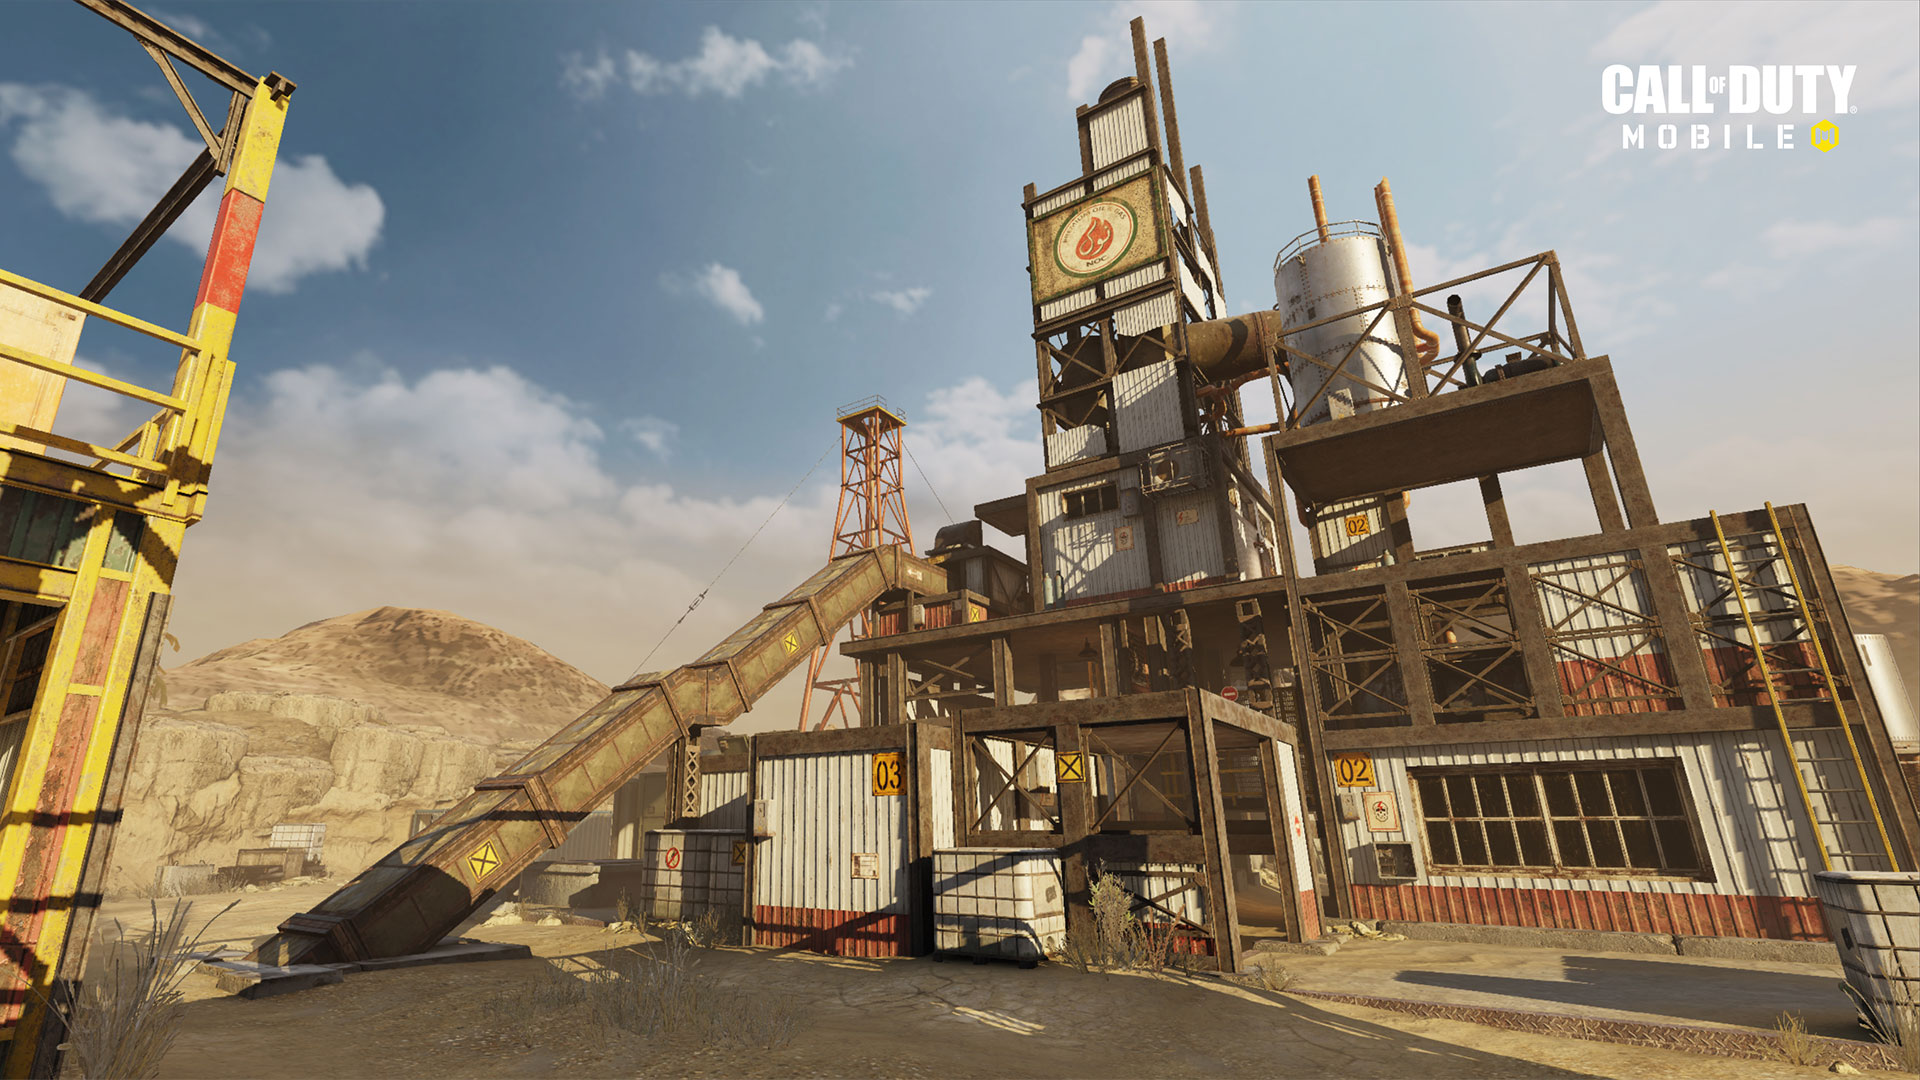 الإصدار 1.0.12 من "Call of Duty: Mobile" متاح الآن بشكل مباشر لتقديم الدعم للموسم التالي "ذات مرة في الصدأ" ، وخرائط جديدة ، وموسم جديد مصنّف ، والمزيد 3